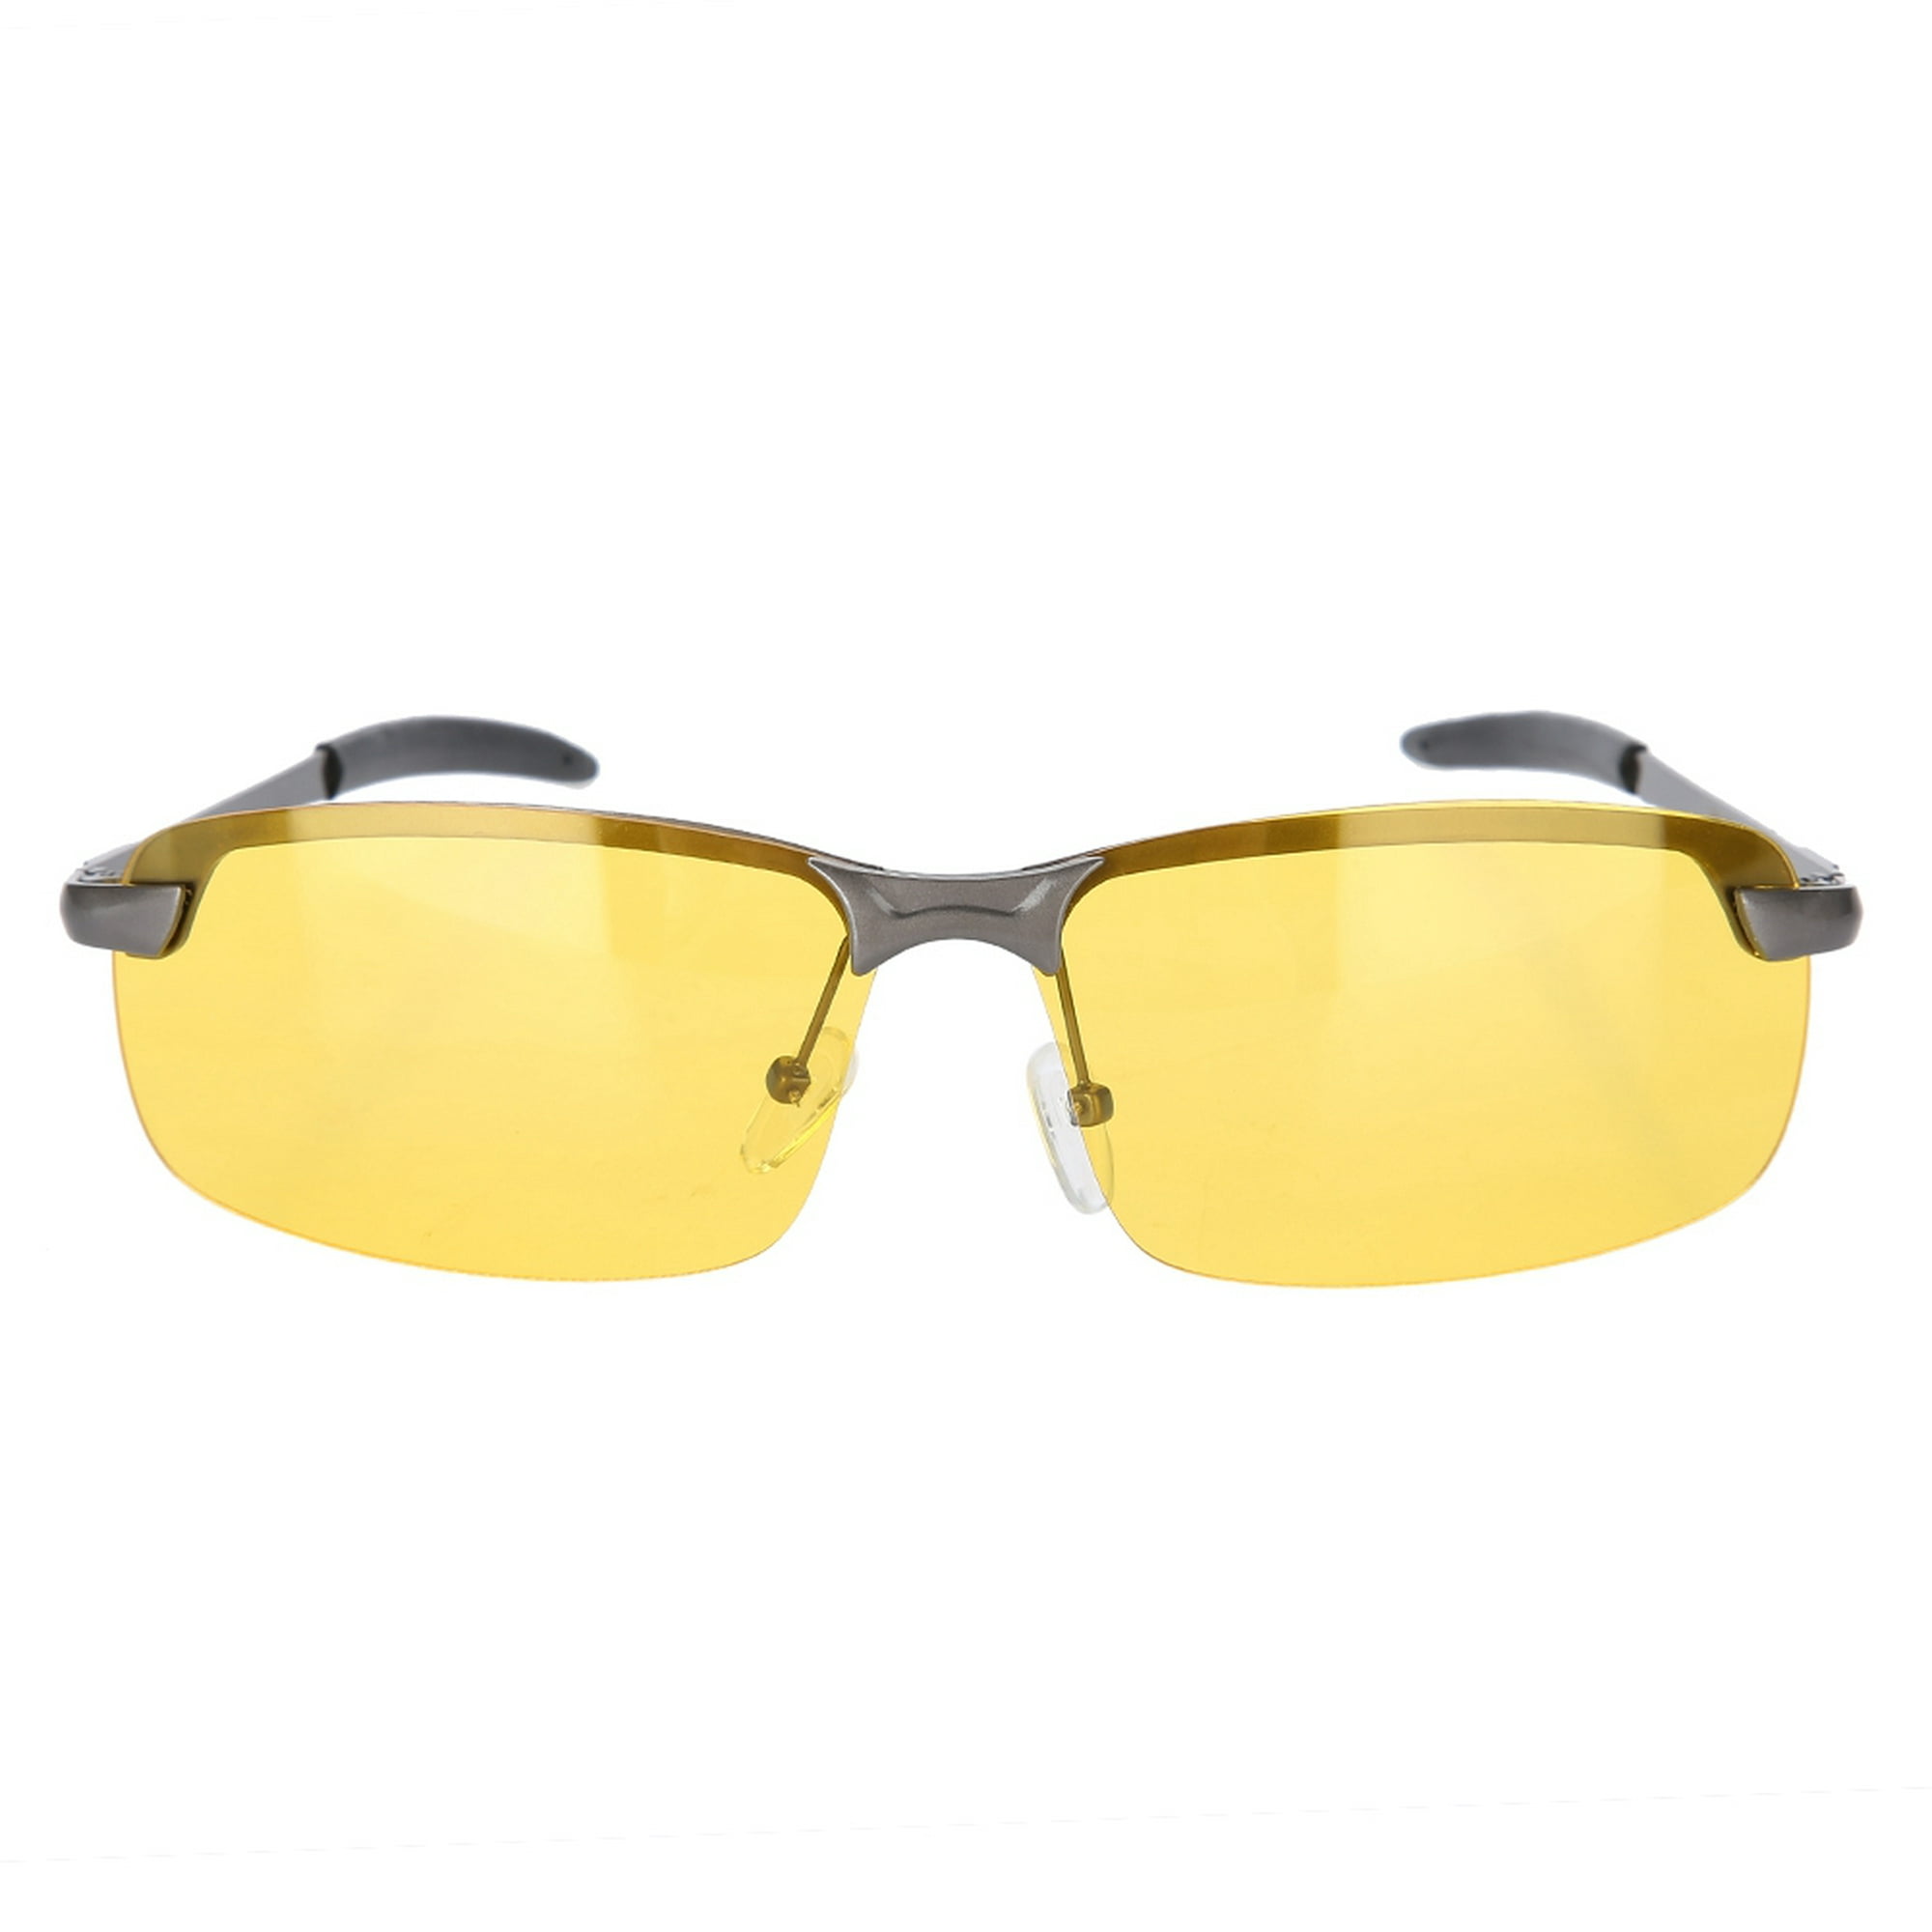 Gafas Polarizadas Amarillas una visión nítida al conducir